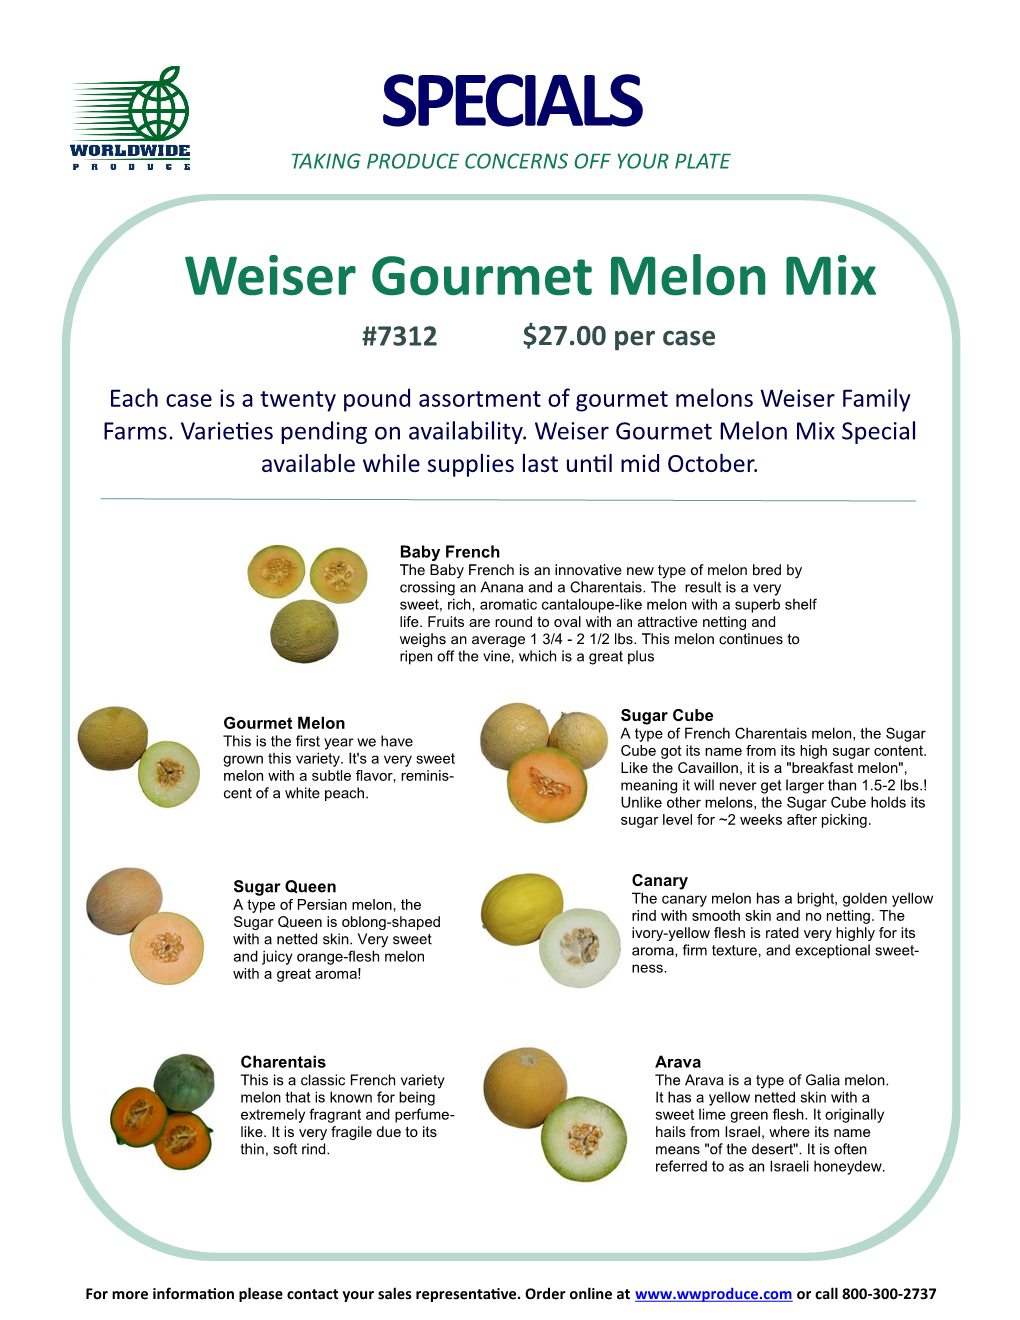 Weiser Gourmet Melon Mix #7312